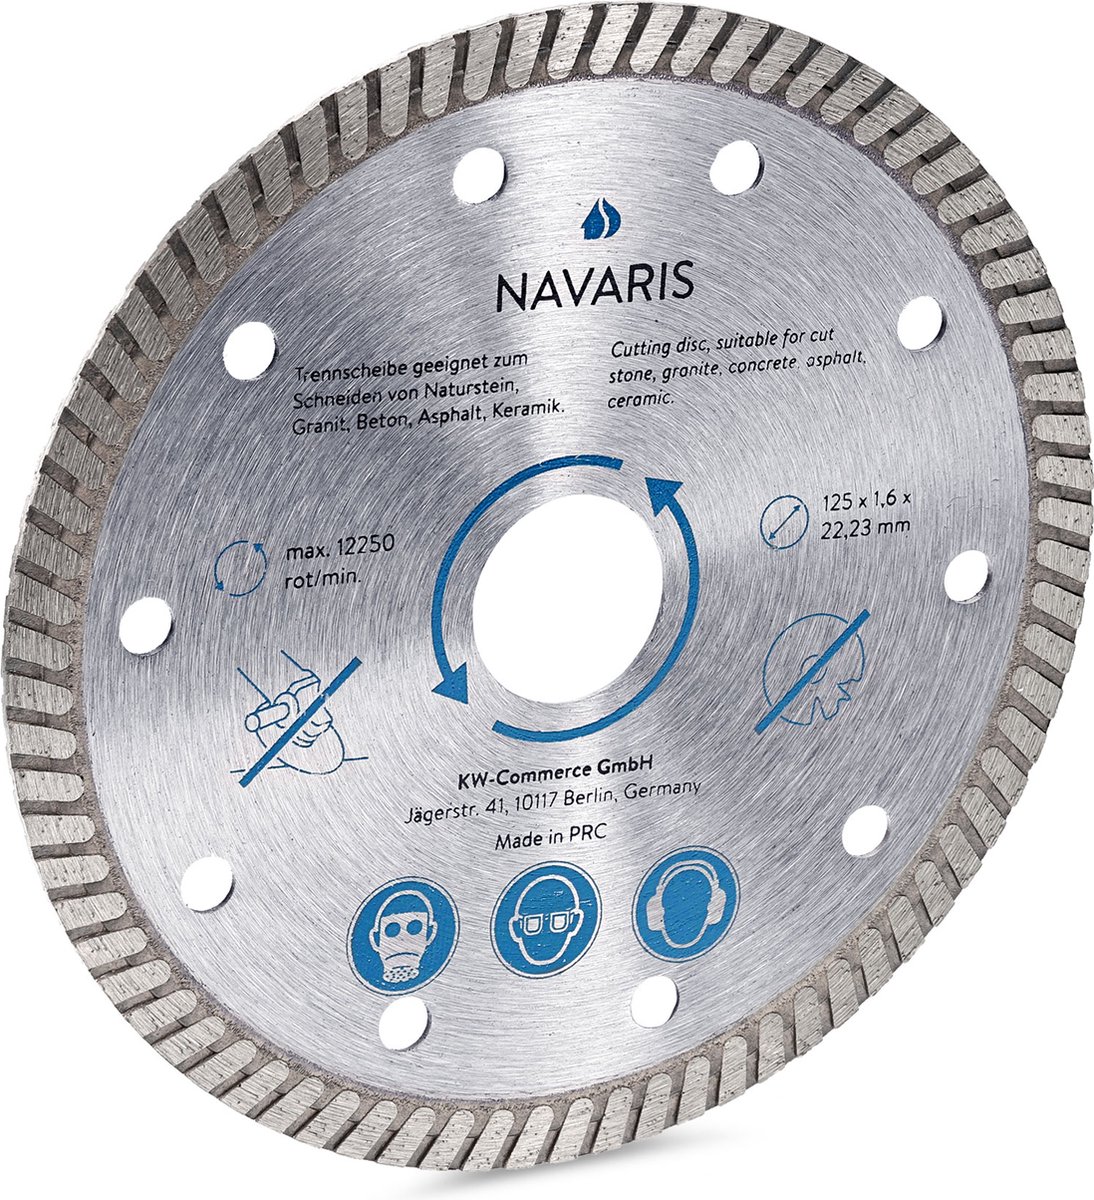 Disque diamant Navaris 125 mm - Disque abrasif pour béton, pierre